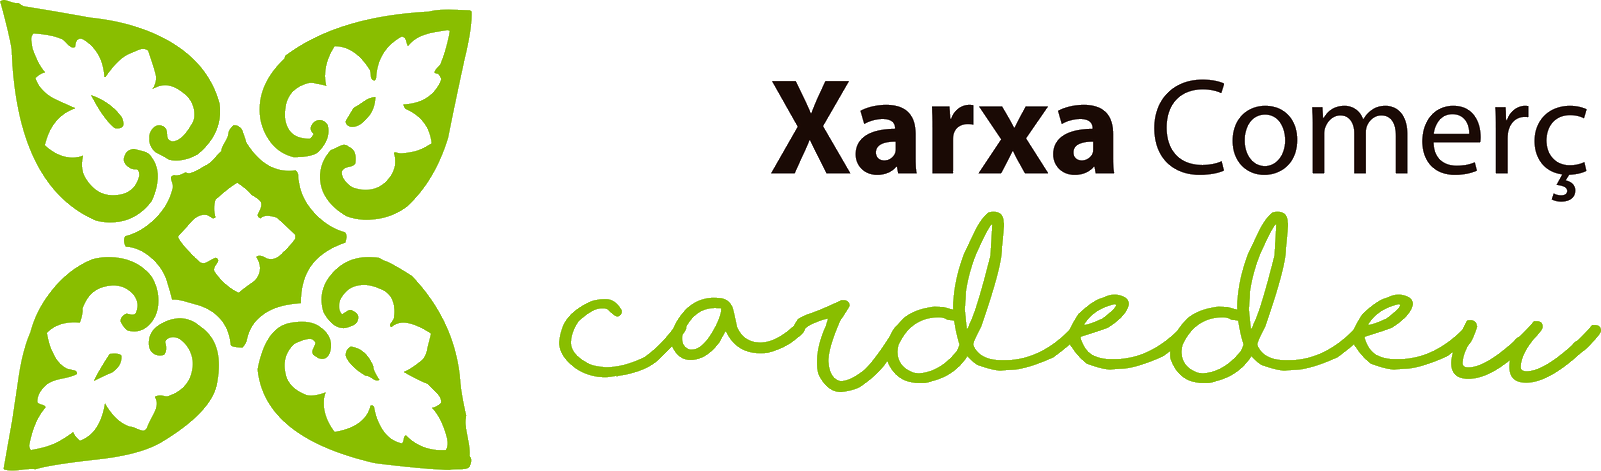 Logo_Xarxa_Comerç_Cardedeu_horitzontal